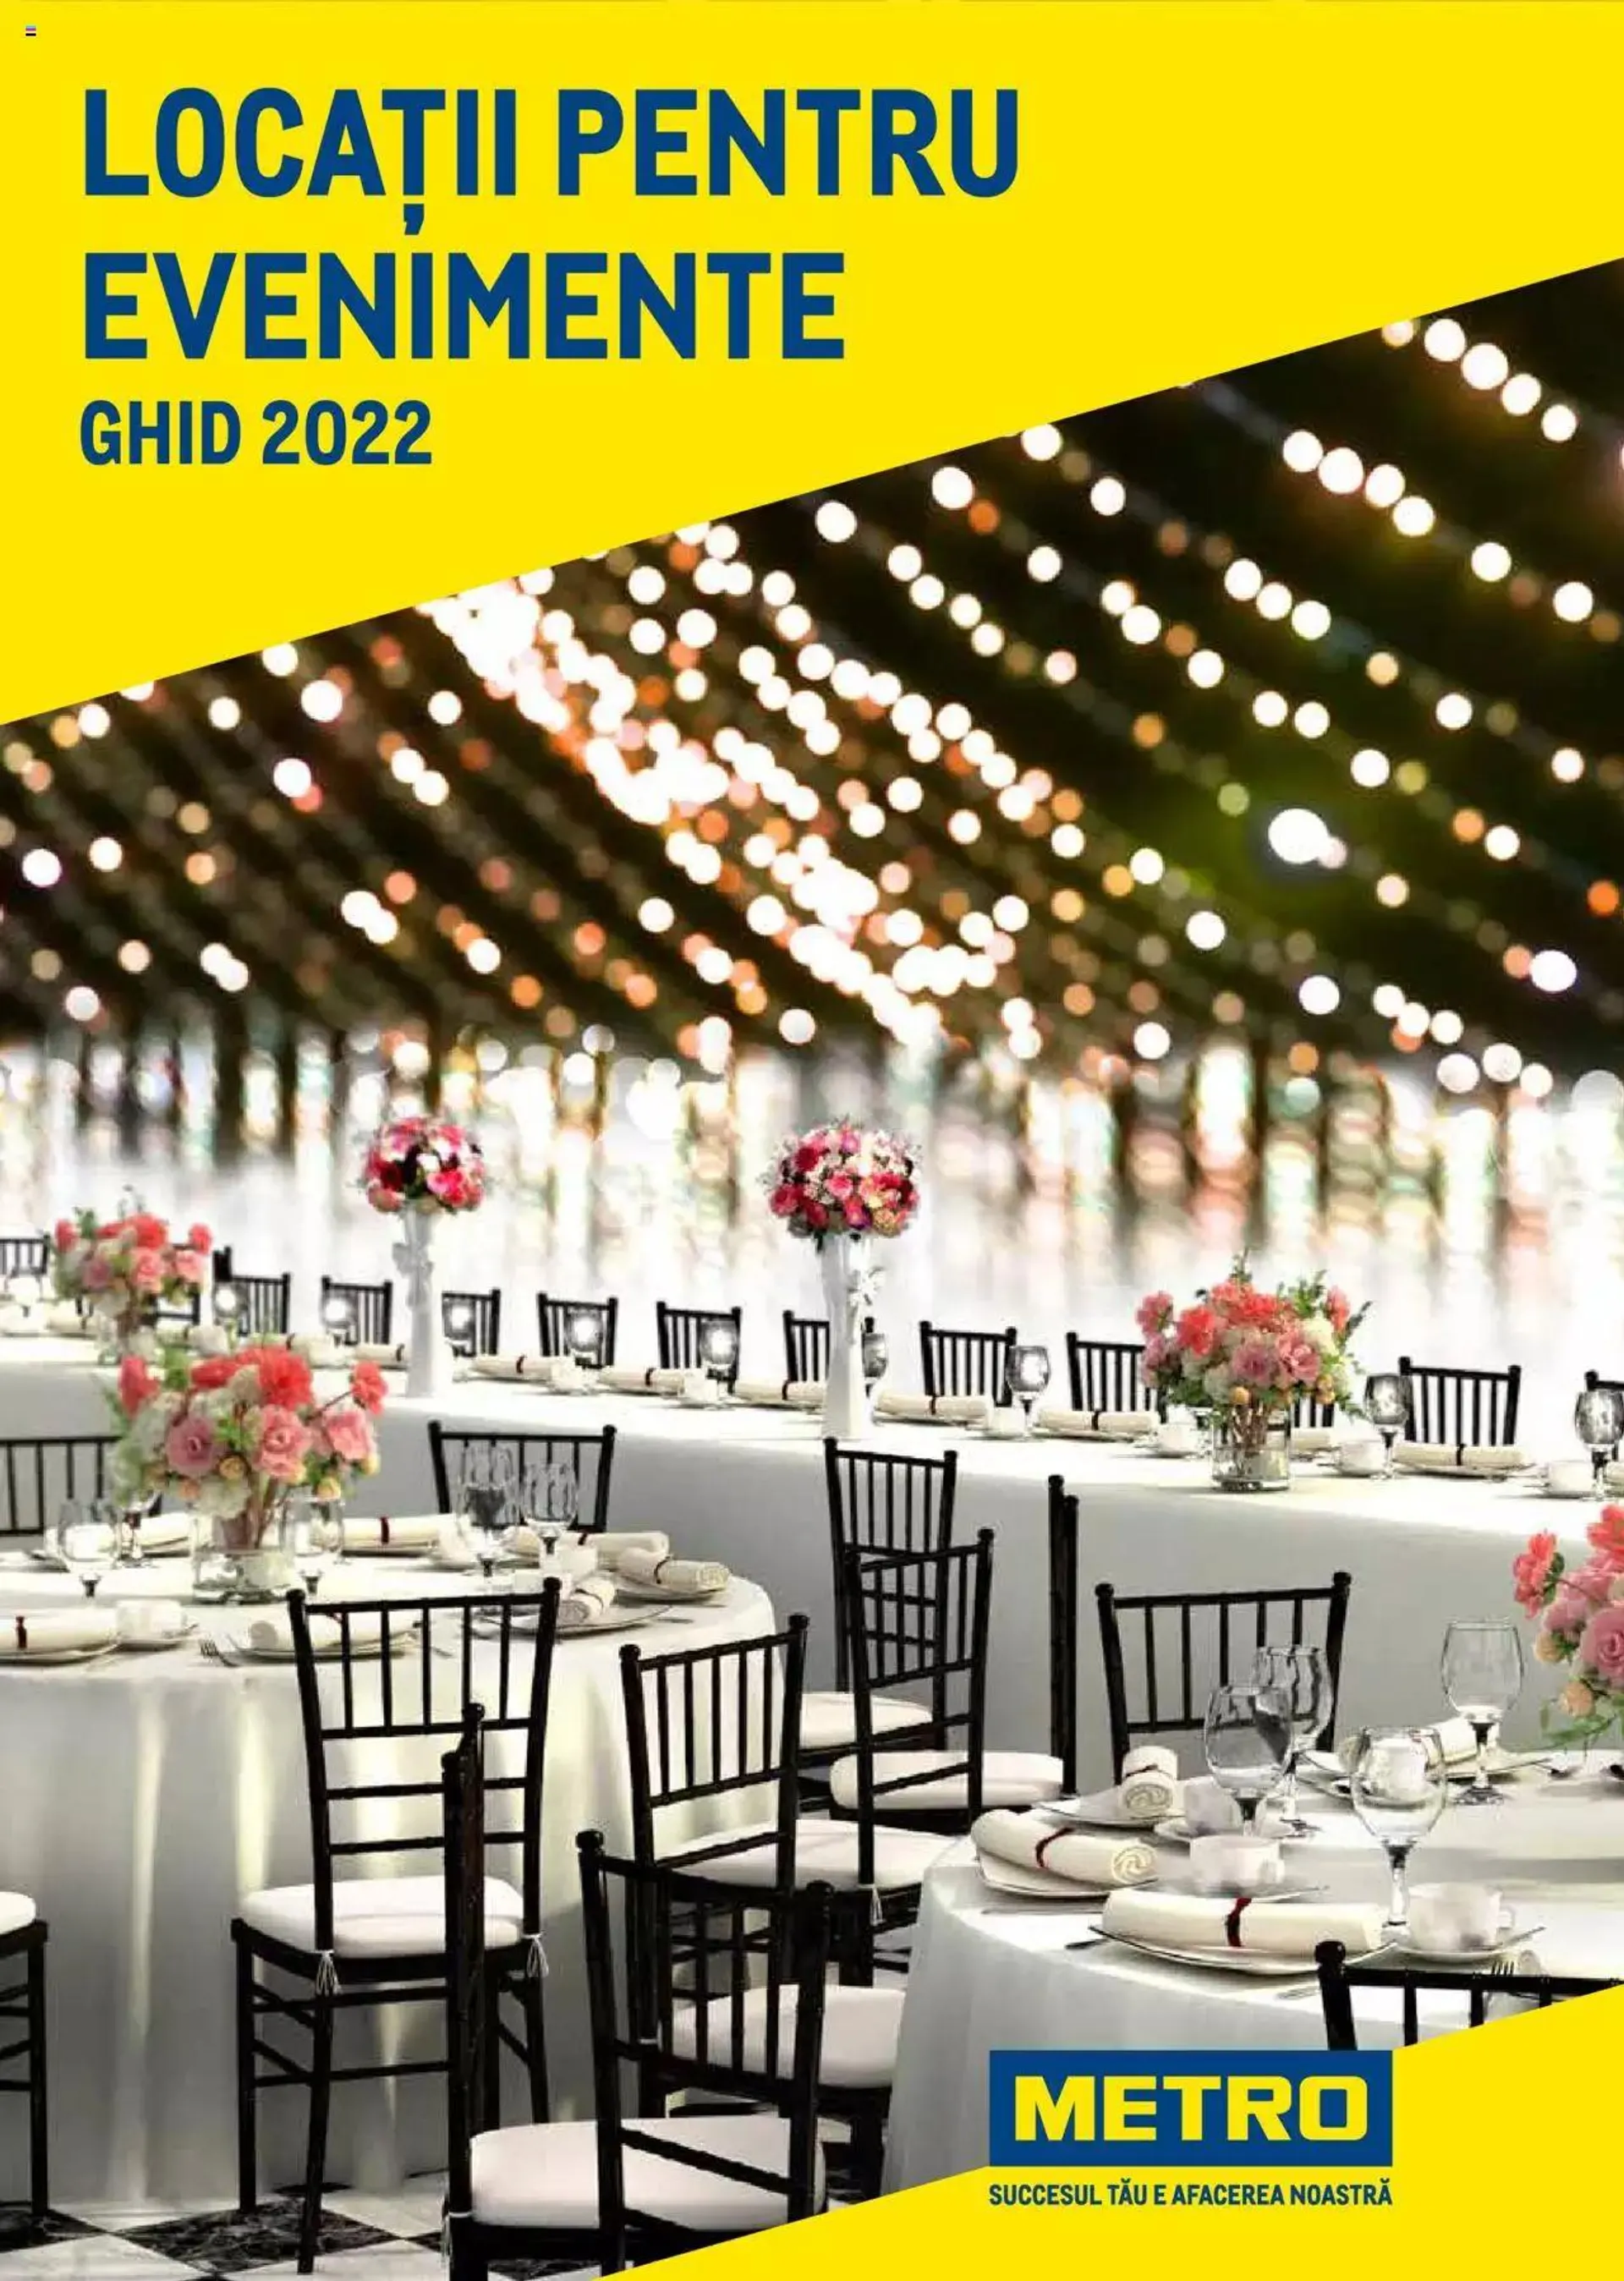 Metro - Ghid locații pentru evenimente 2022 - 0